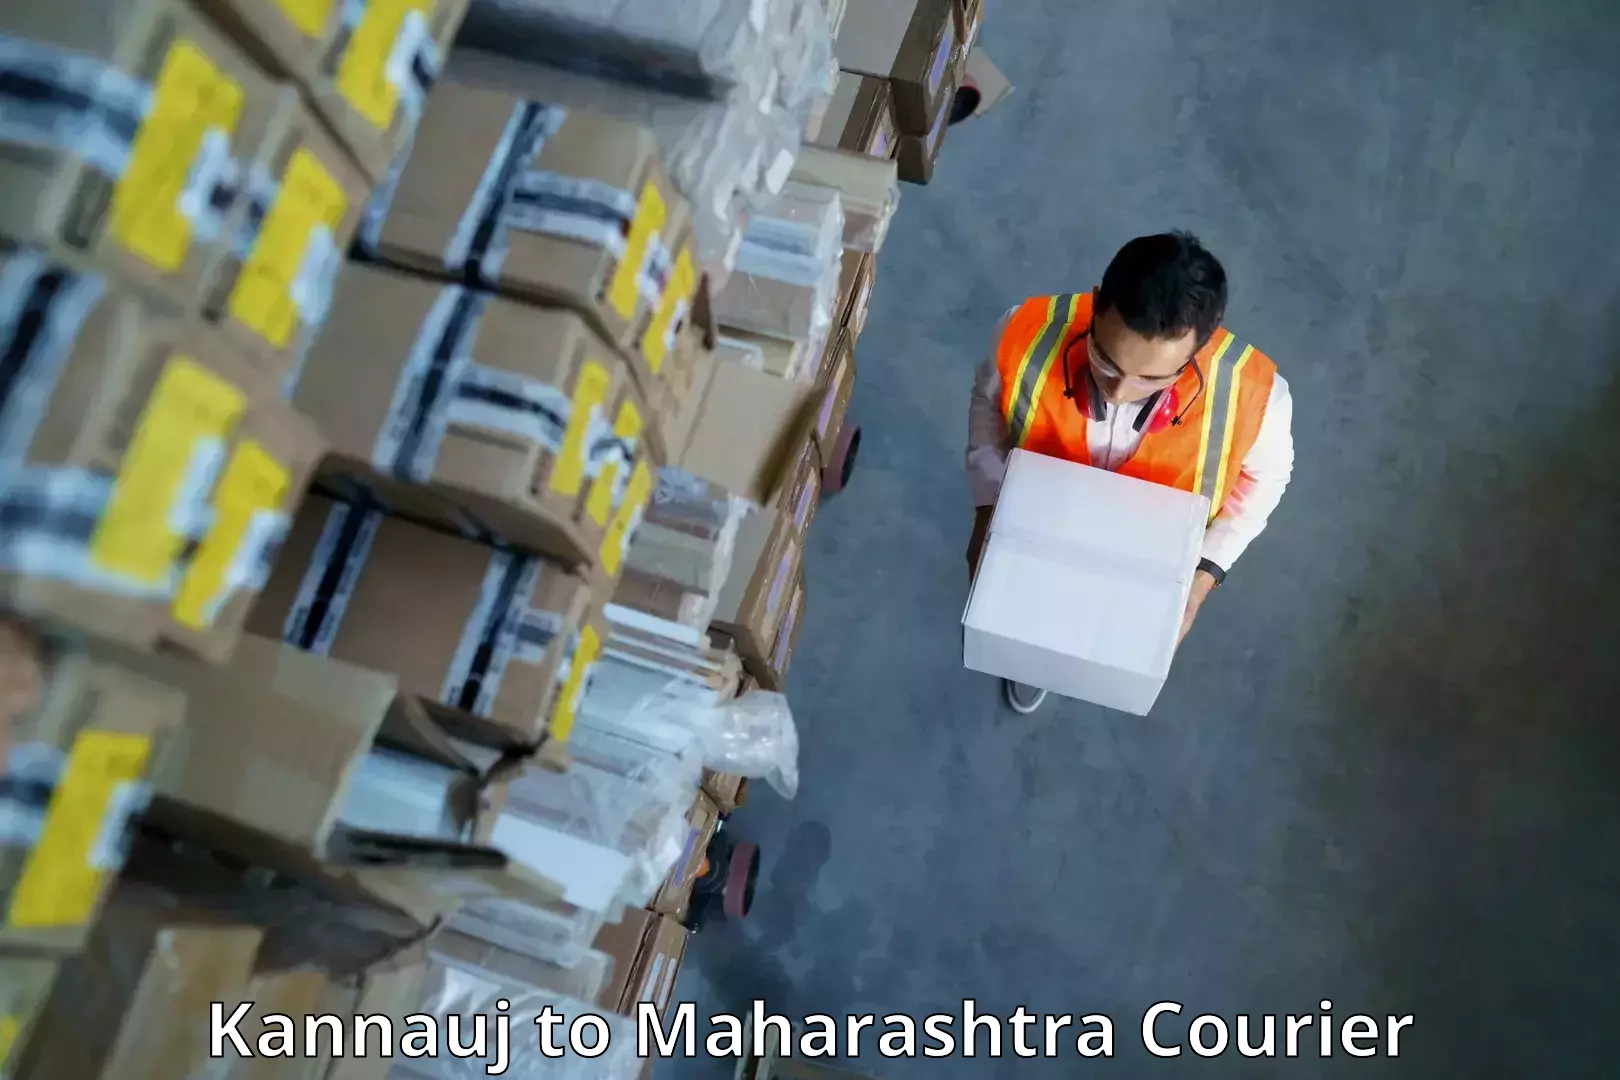 High-speed parcel service Kannauj to Maharashtra